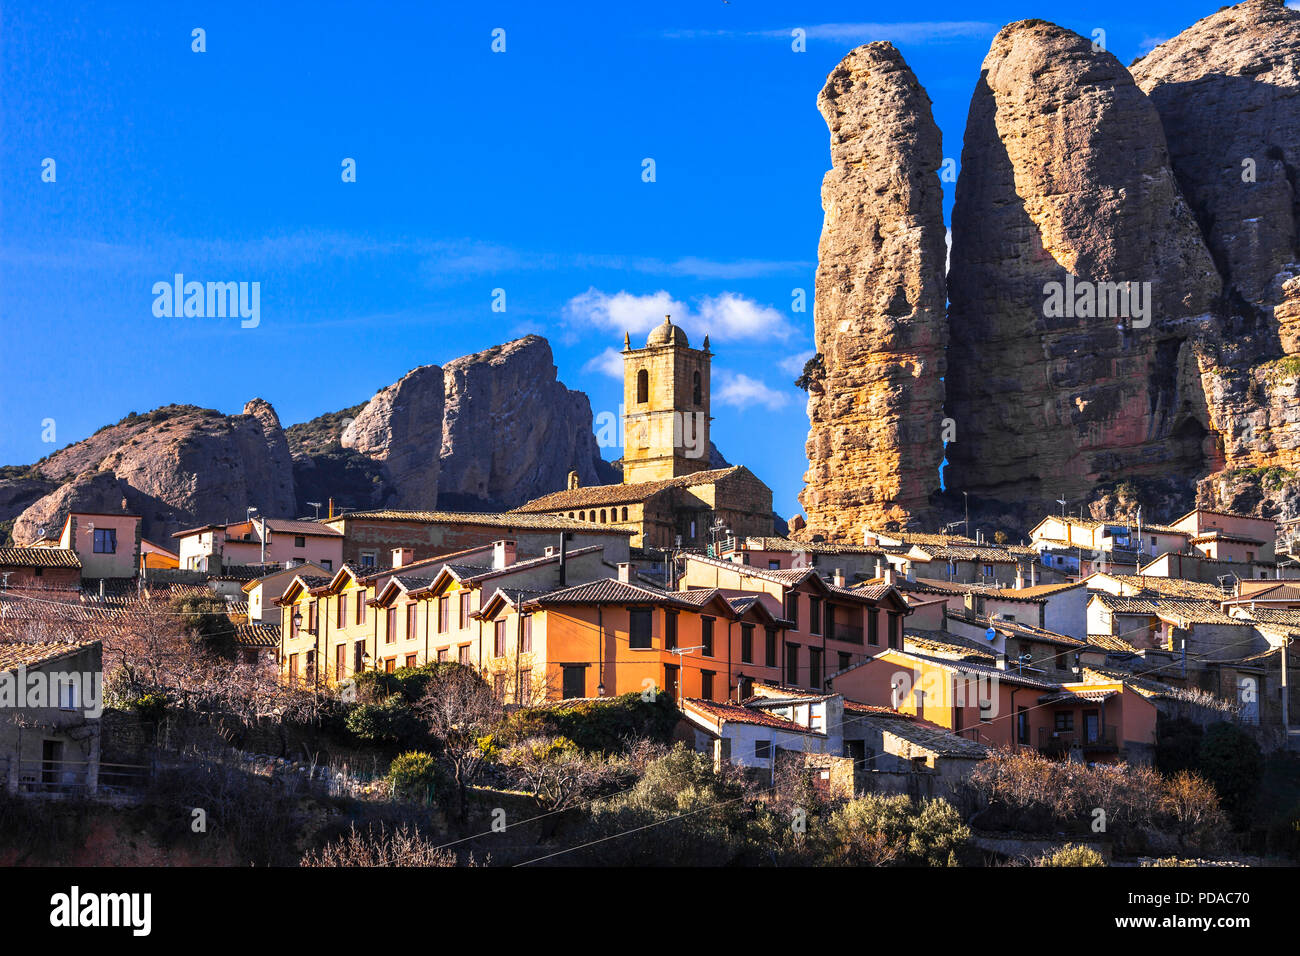 Unico Mallos de Aguero village,vista con incredibili rocce e case tradizionali,Spagna. Foto Stock